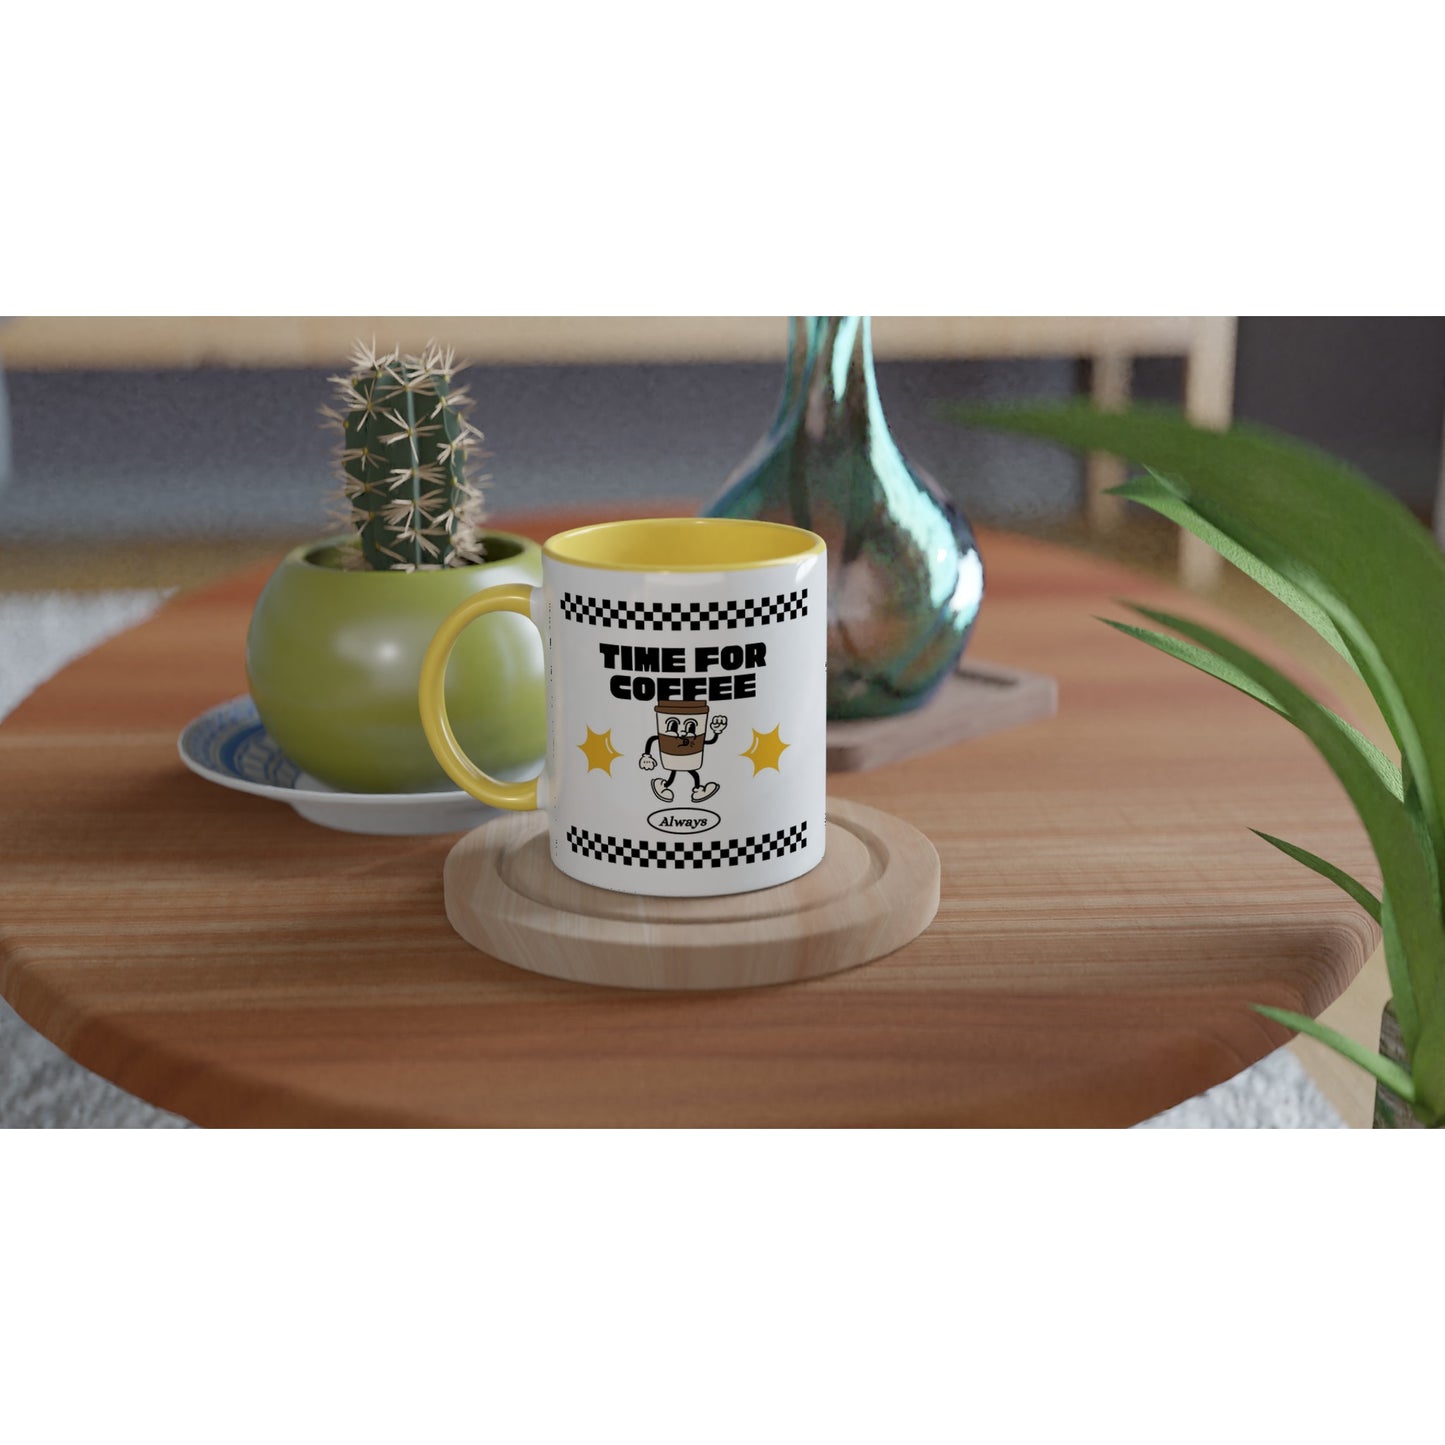 Time For Coffee, Always - White 11oz Ceramic Mug with Colour Inside Colour 11oz Mug coffee retro